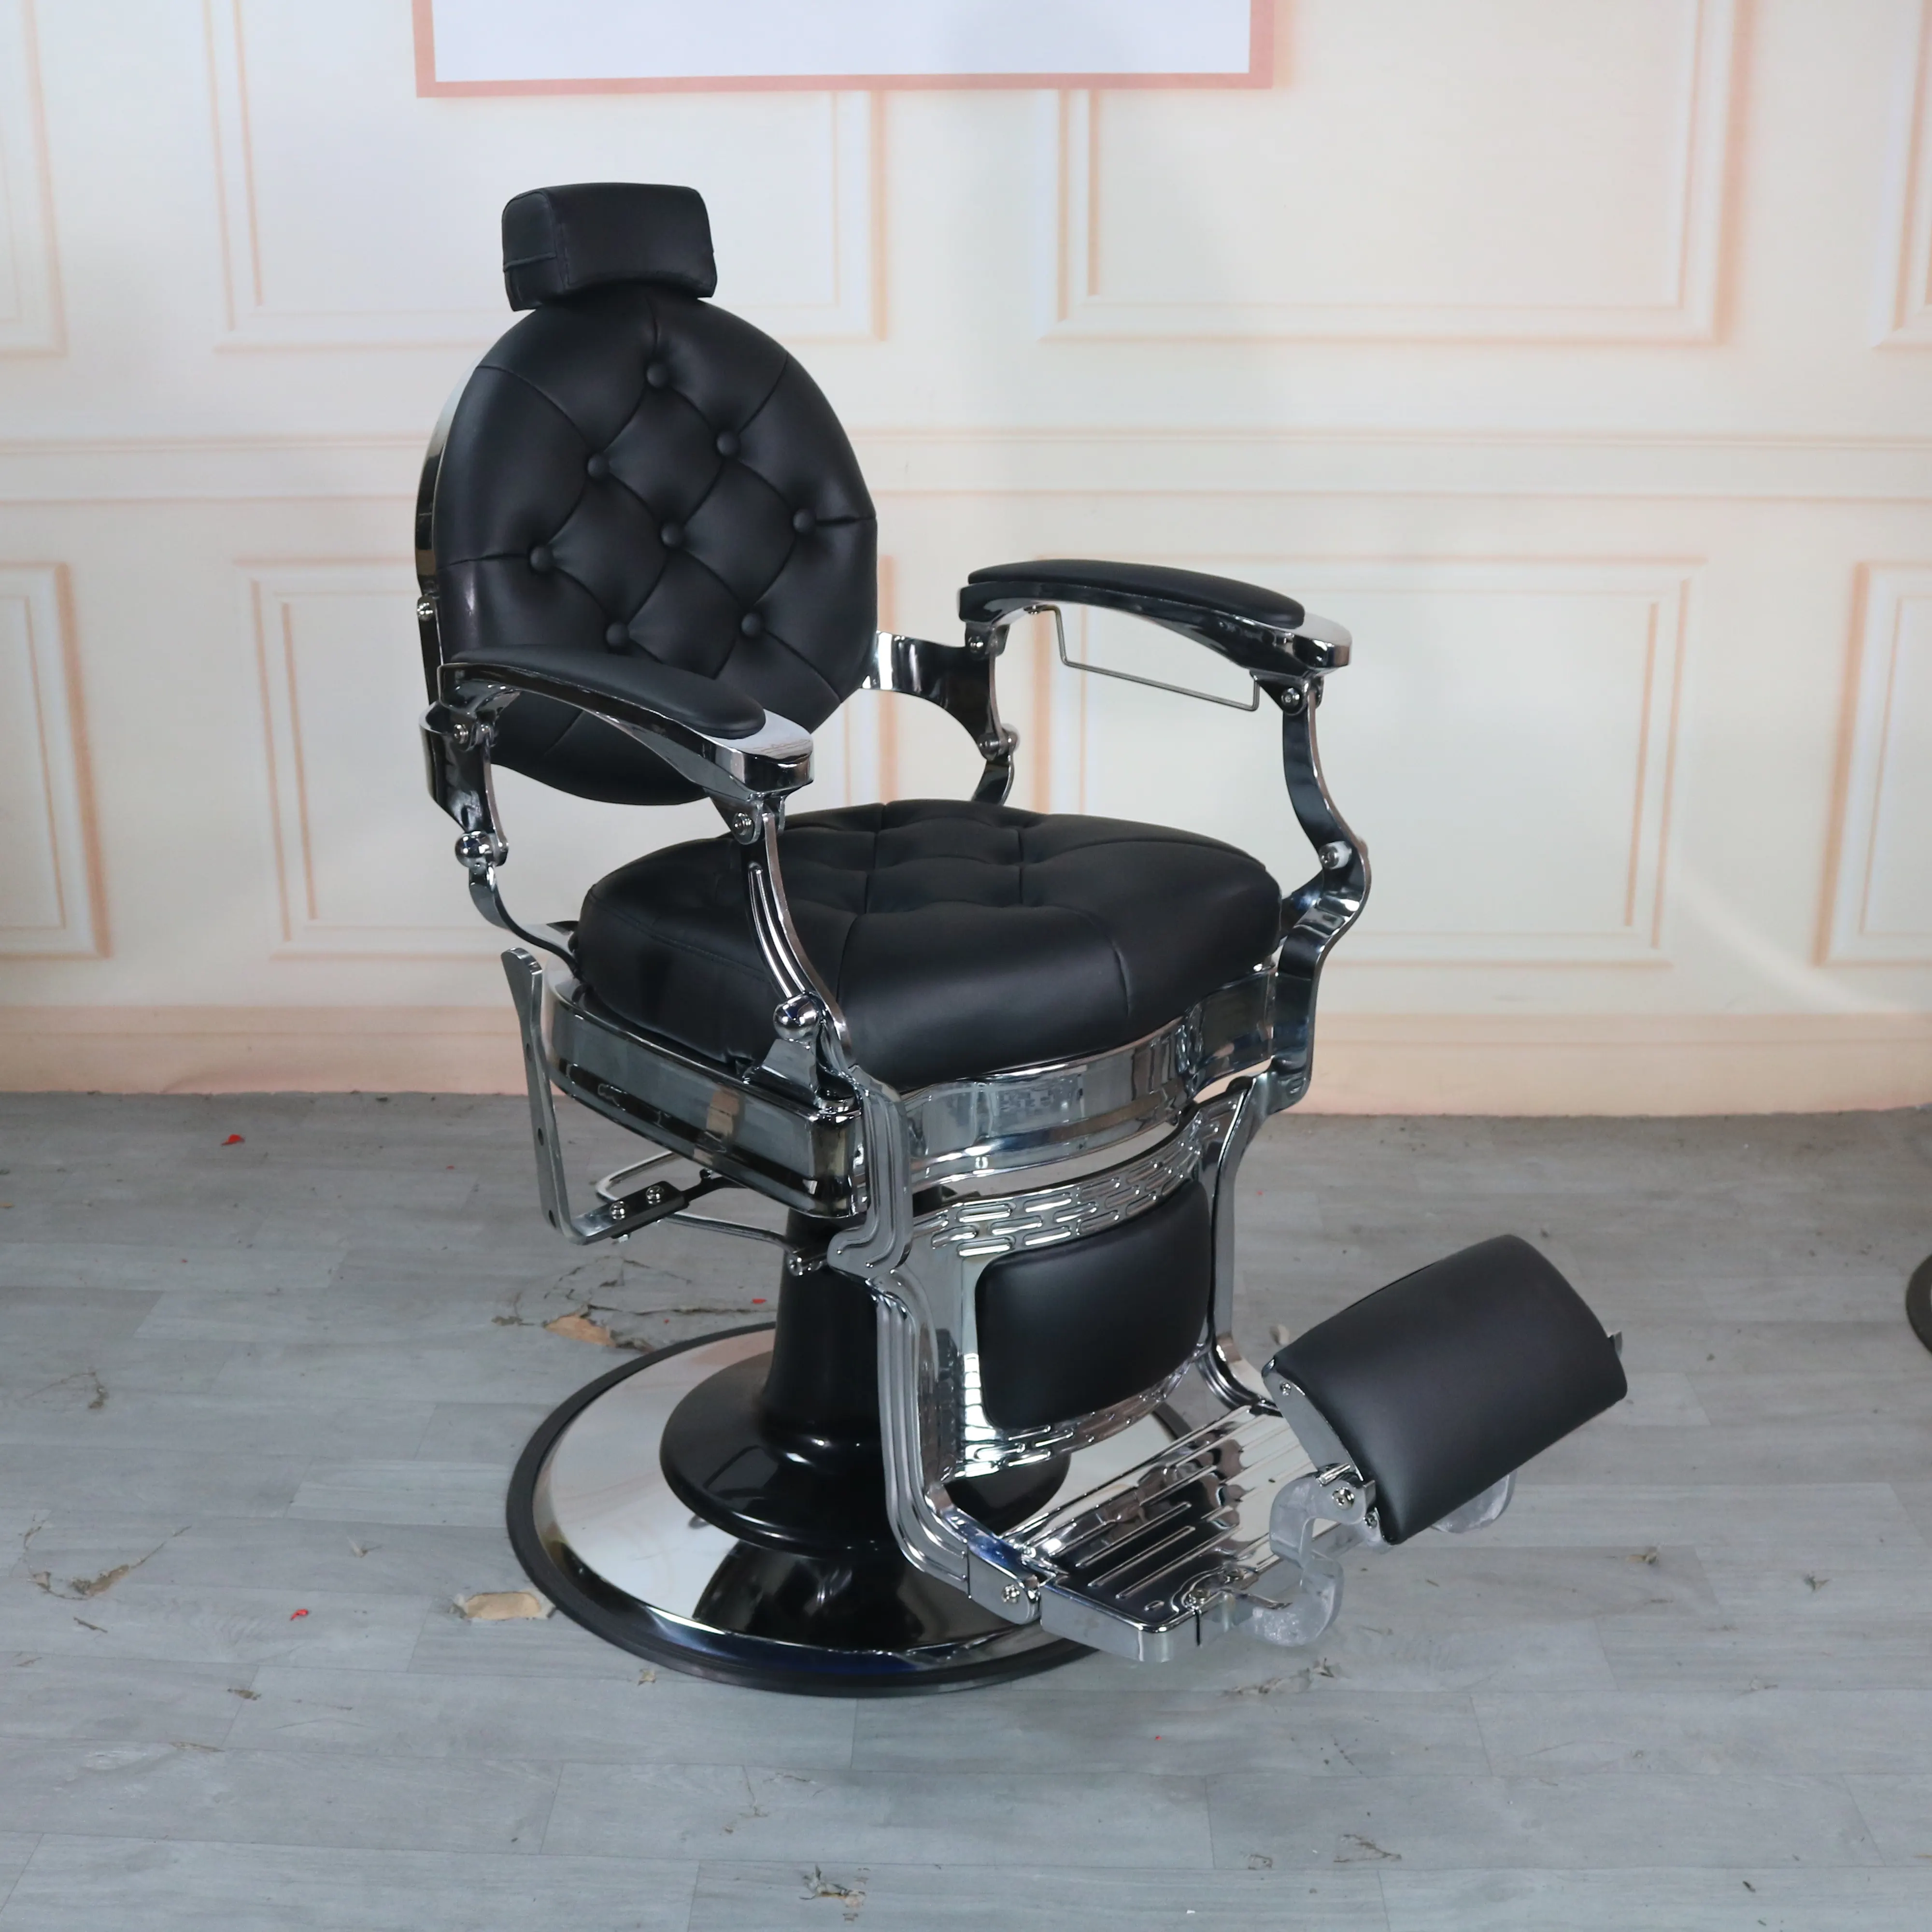 2023 kursi tukang cukur tugas berat, kursi salon rambut semua kegunaan, kursi tukang cukur klasik perak antik